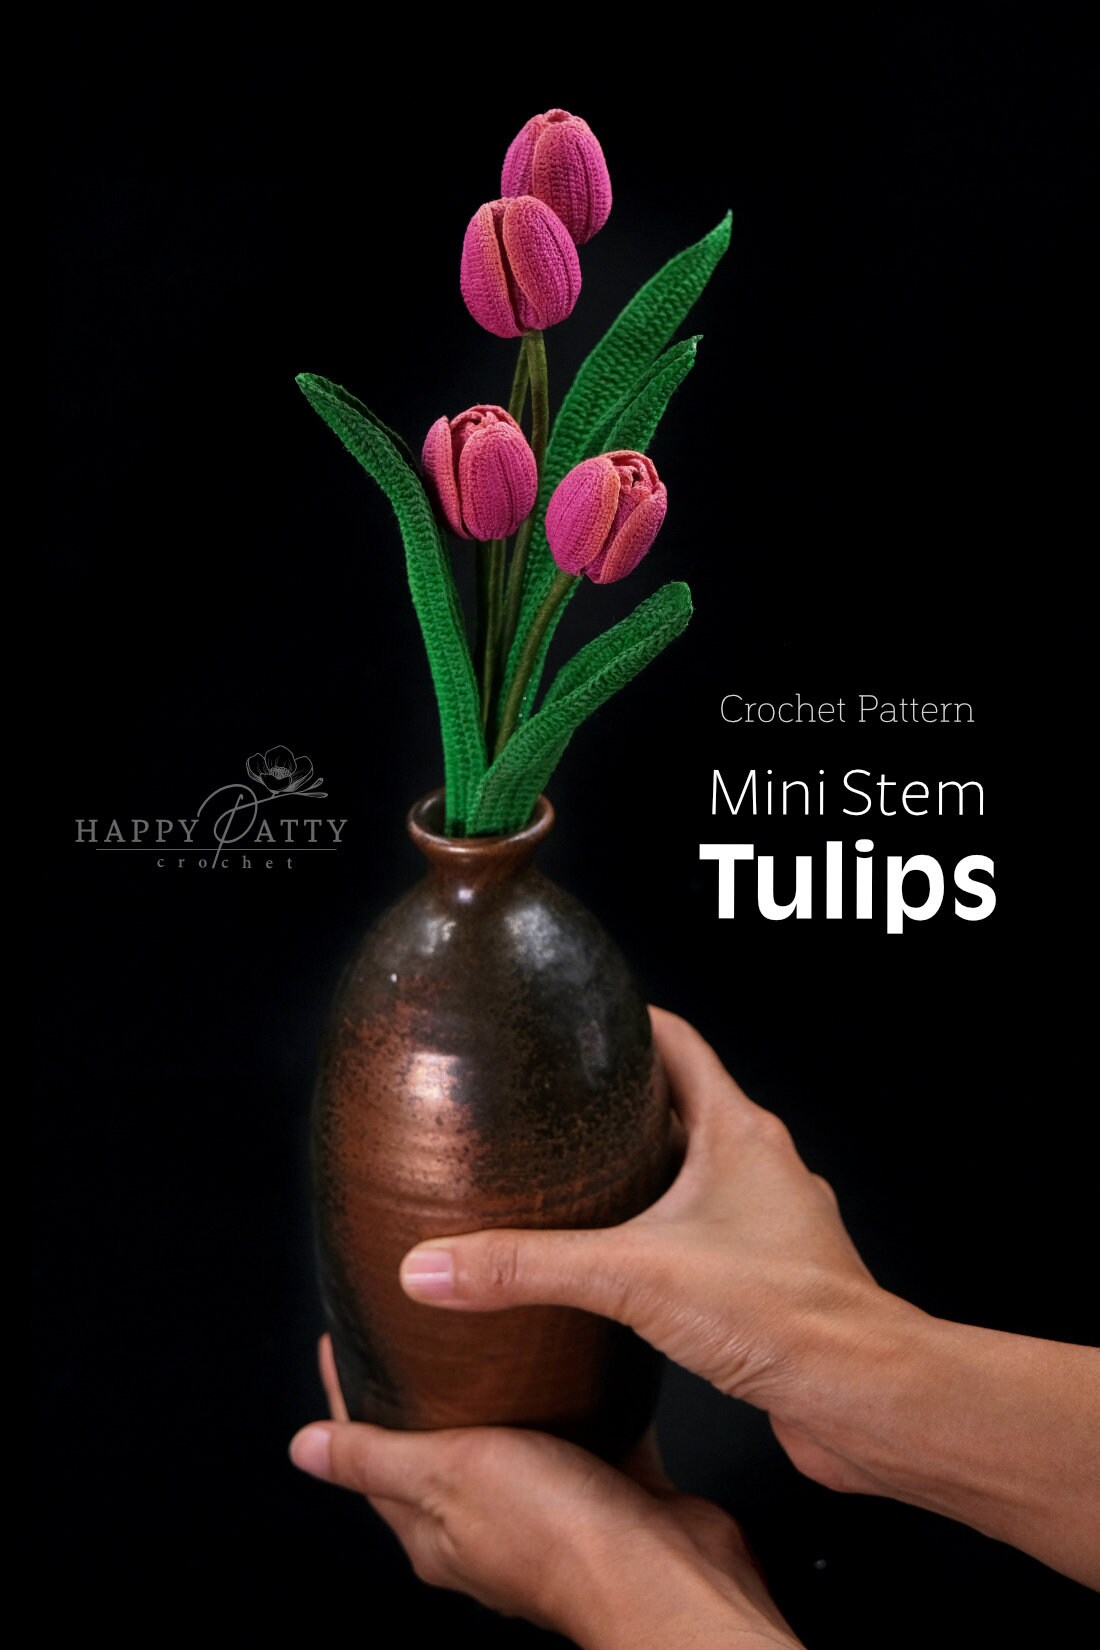 Crochet Pattern for a Mini Stem Tulip Flower - Crochet Flower Pattern for a Miniature Tulip